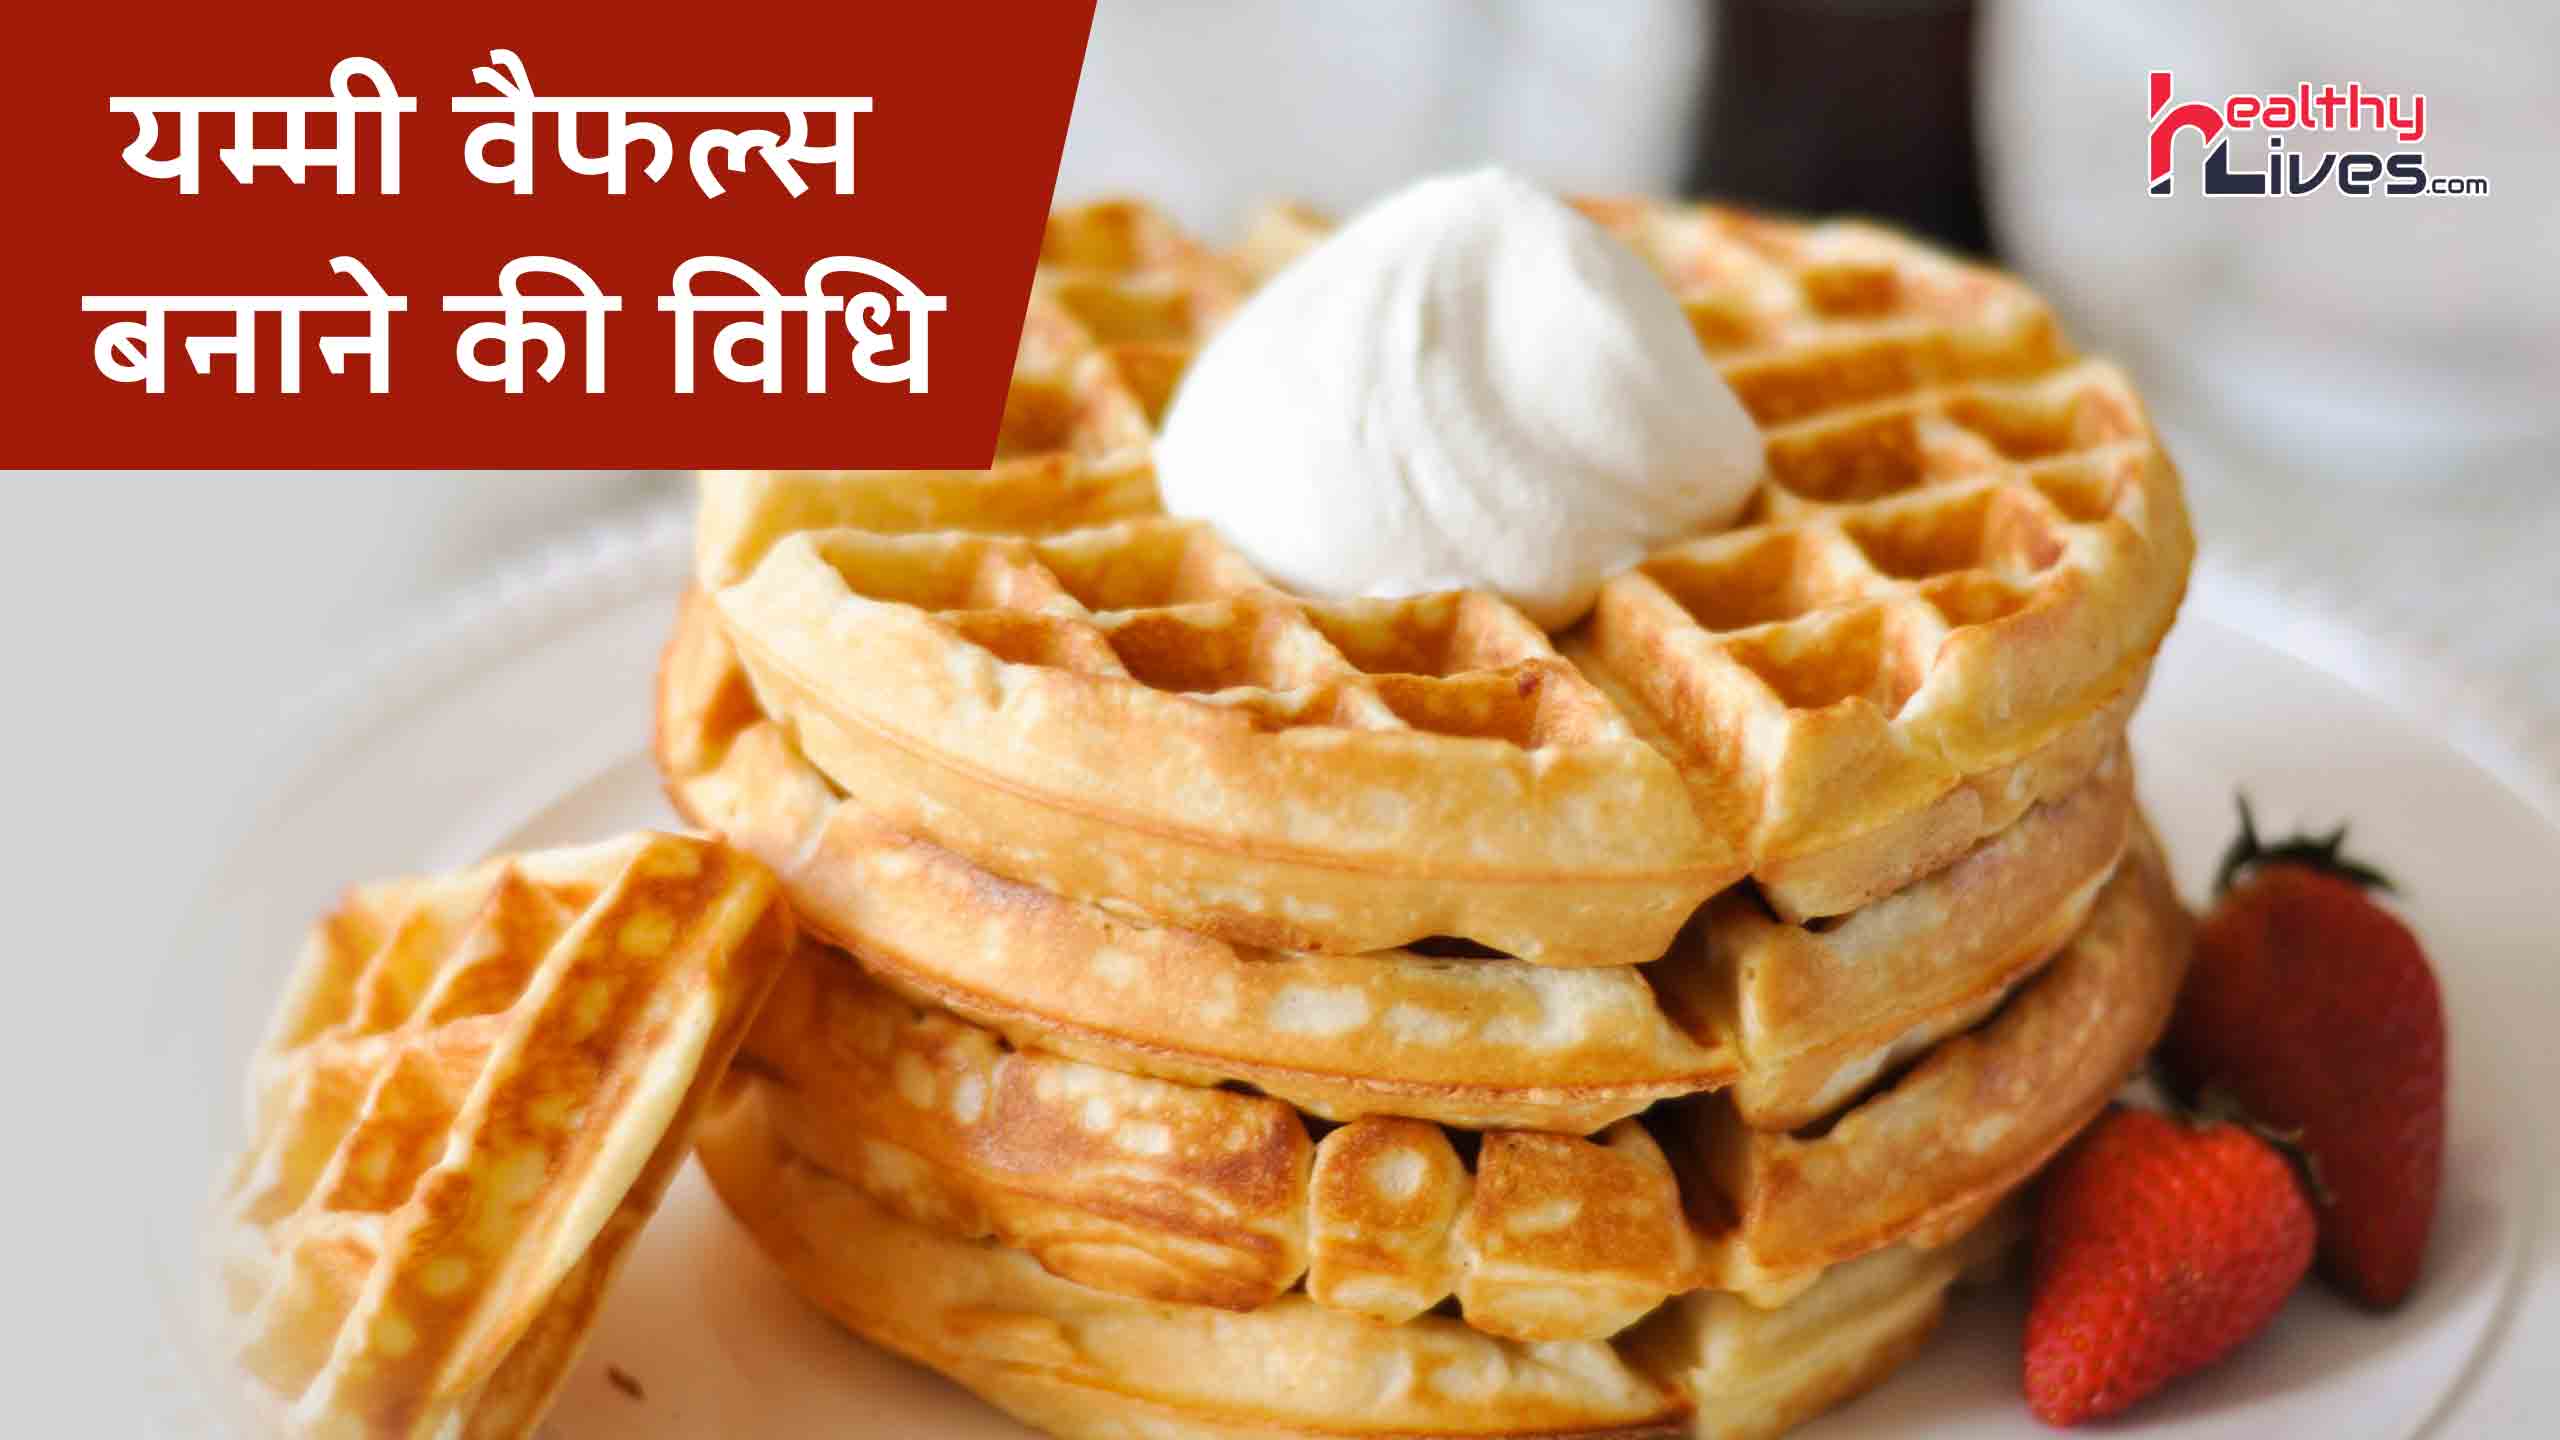 Waffles Recipe in Hindi: स्नैक्स में बनाए क्रंची क्रिस्पी और यम्मी वैफल्स